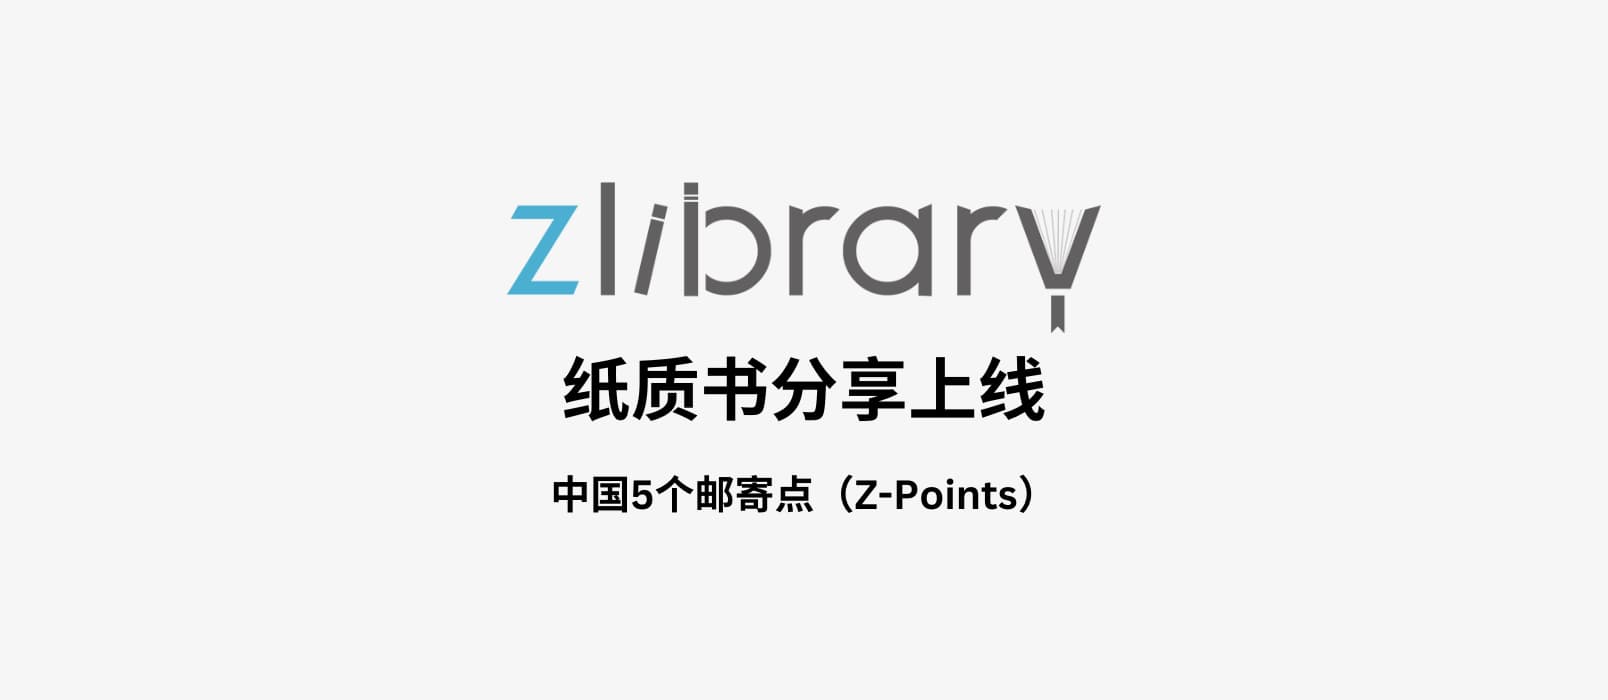 Z-Library 又搞事情：Z-Points - 提供纸质书籍分享，中国5个点